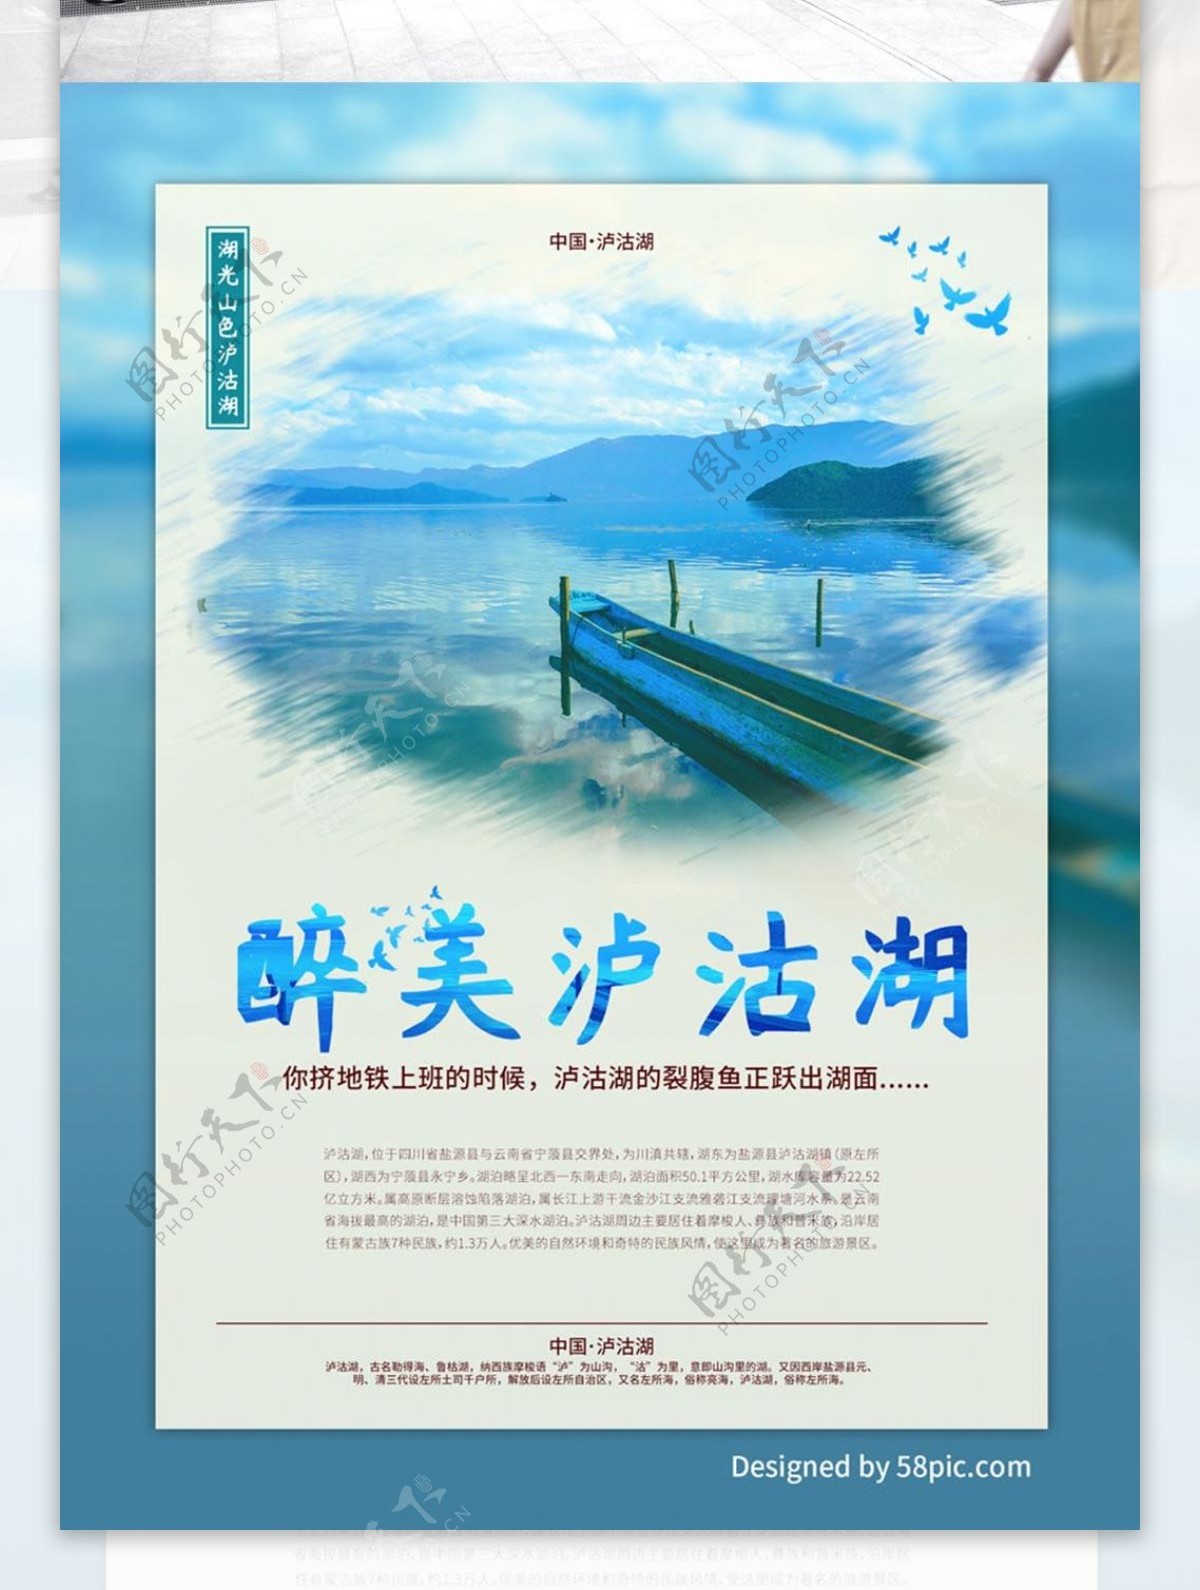 泸沽湖蓝色旅游海报